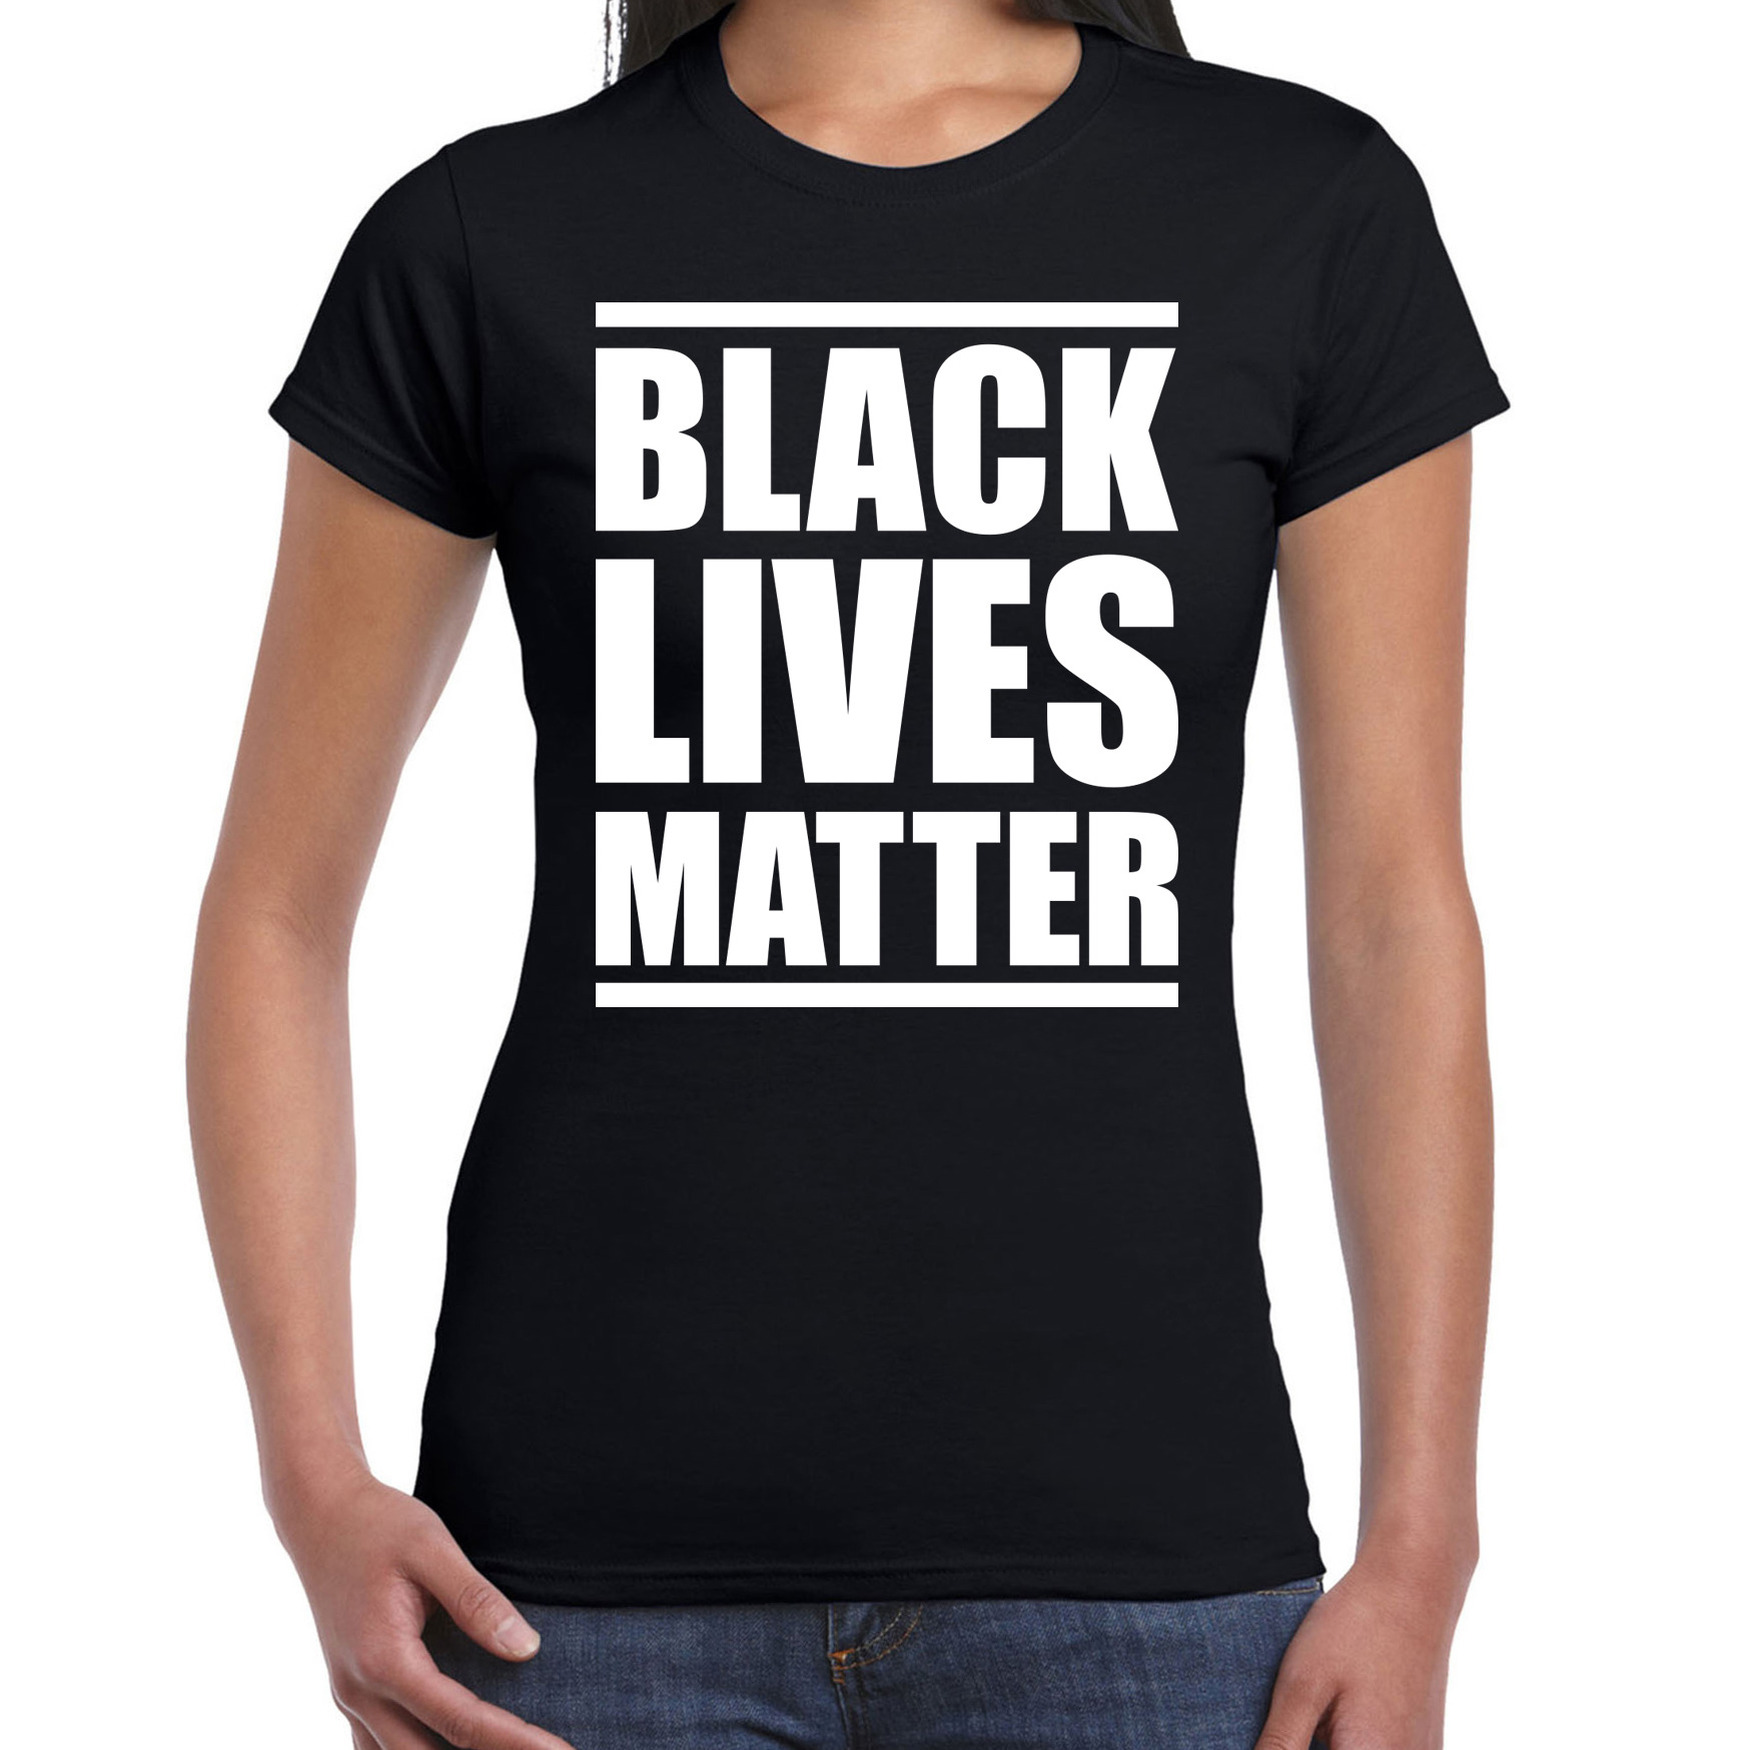 Black lives matter demonstratie-protest t-shirt zwart voor dames